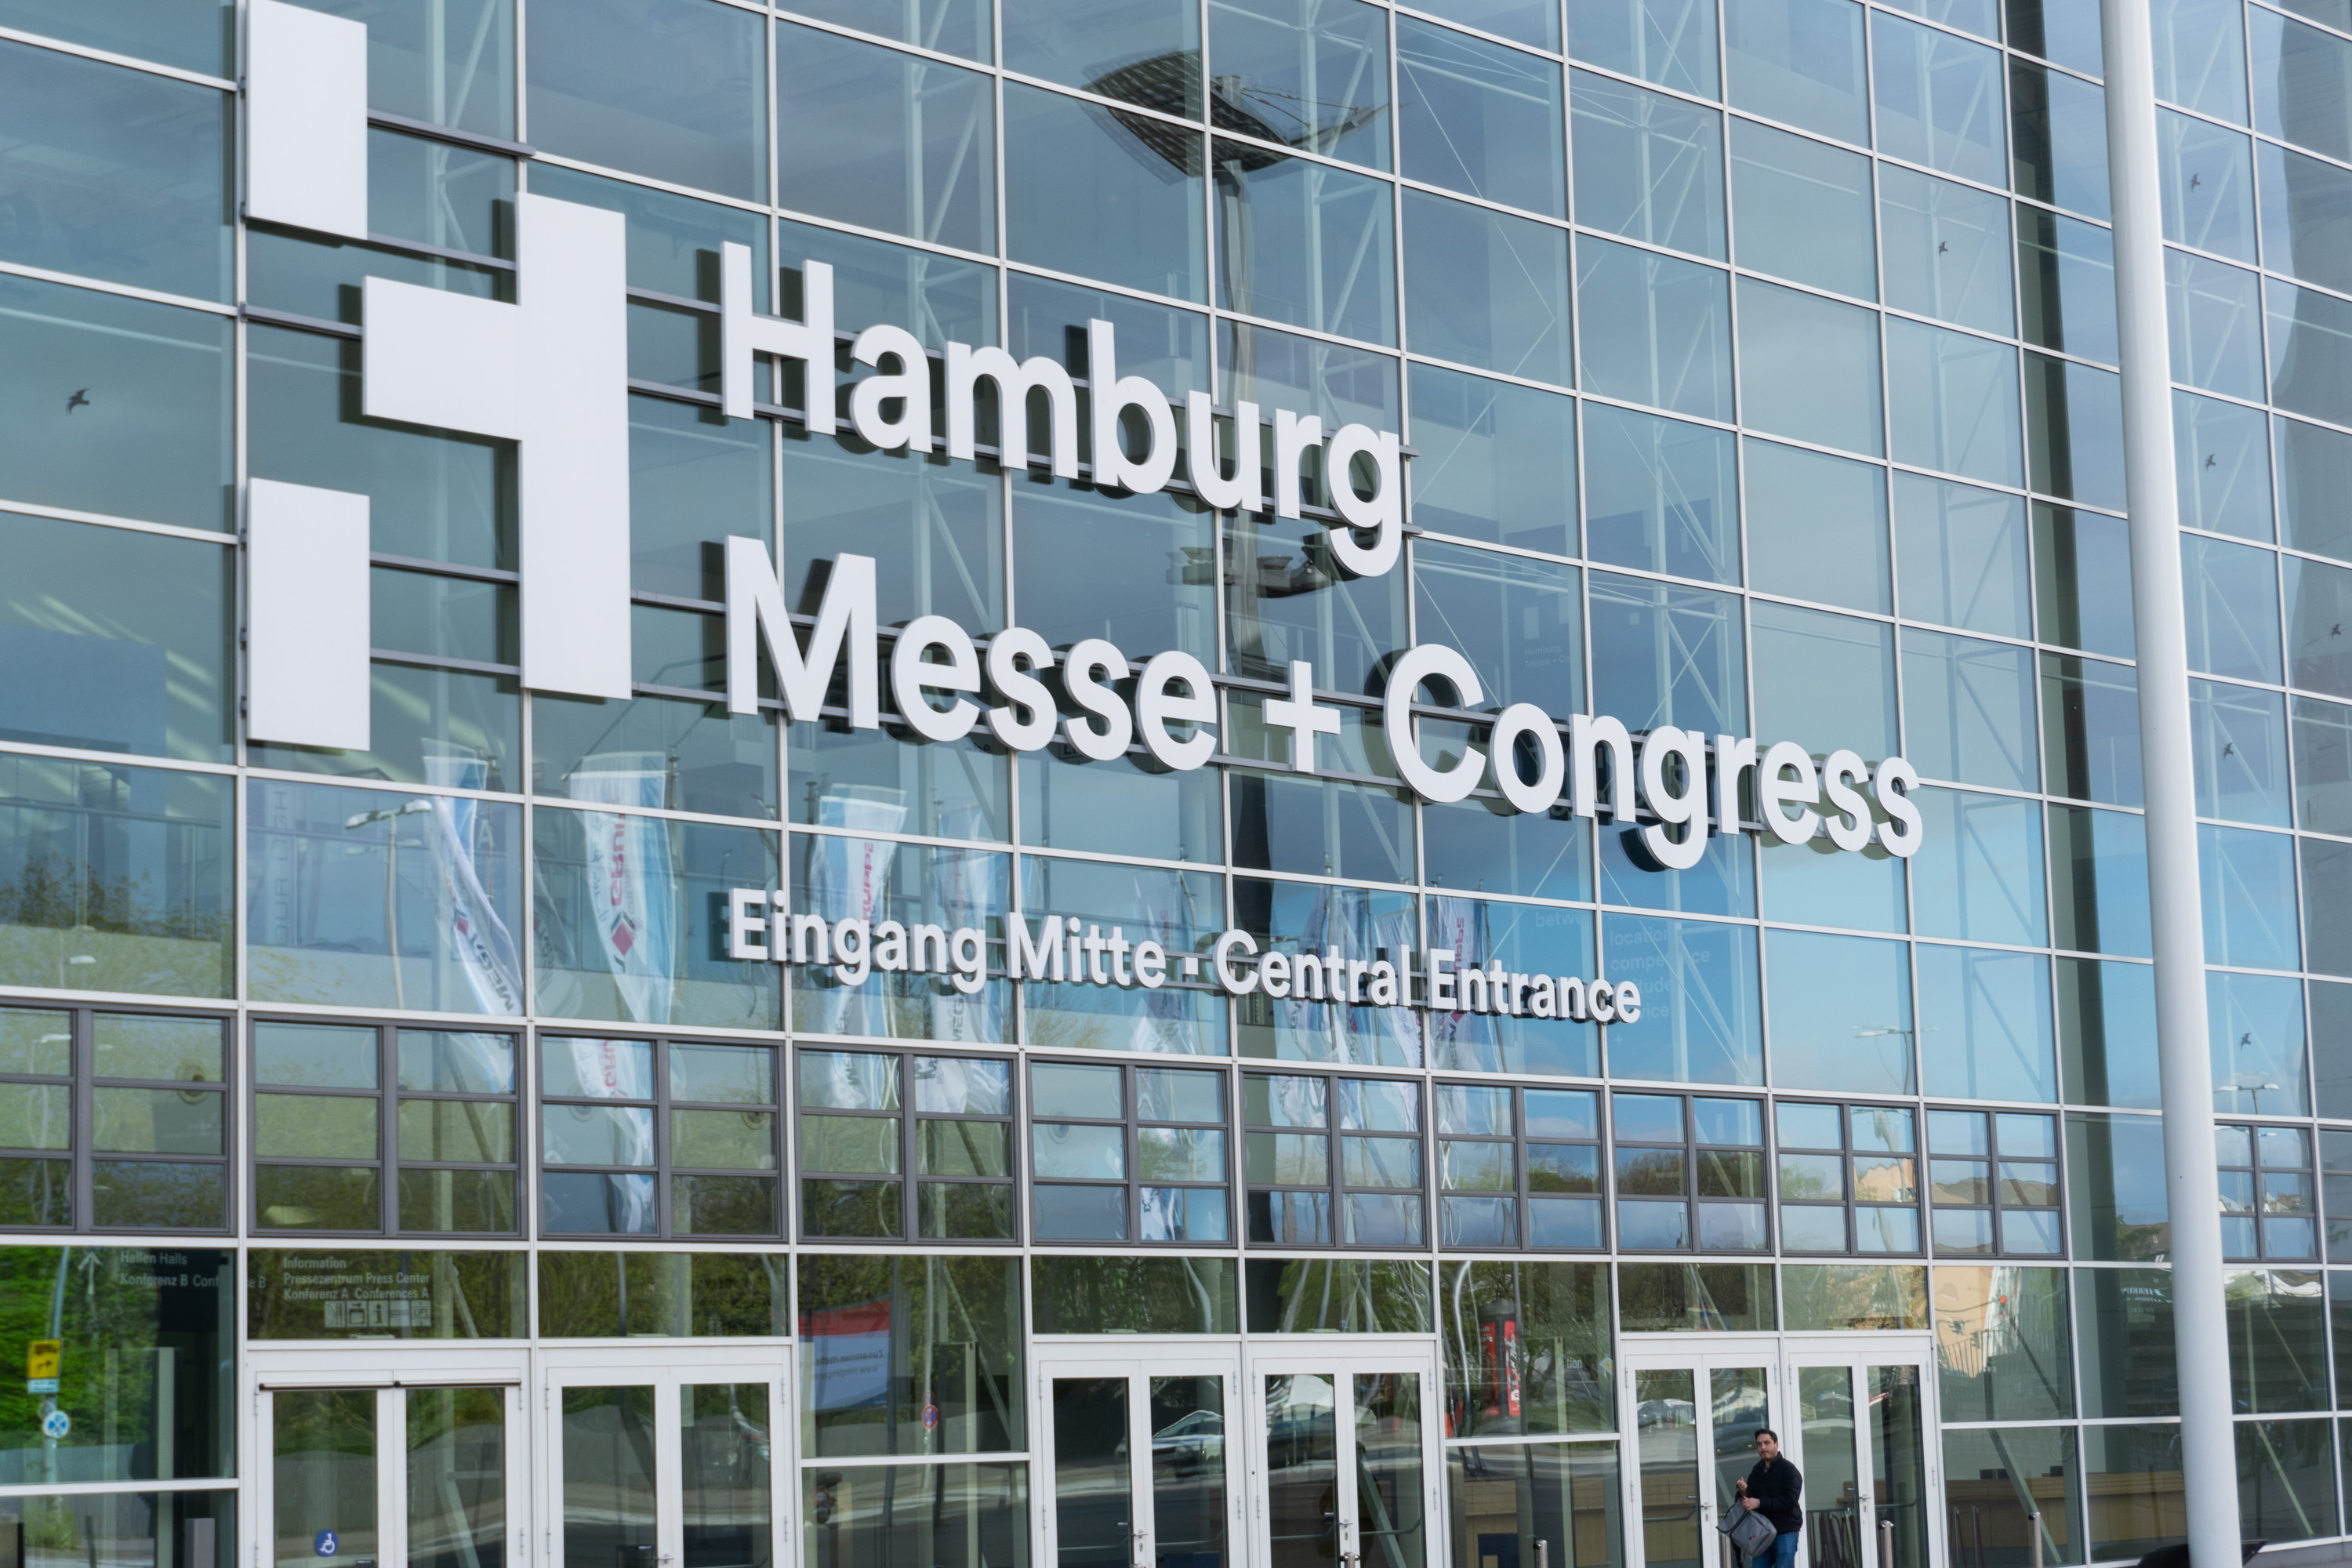 In weißer Schrift steht auf der Glasfront des Gebäudes "Hamburg Messe + Congress".